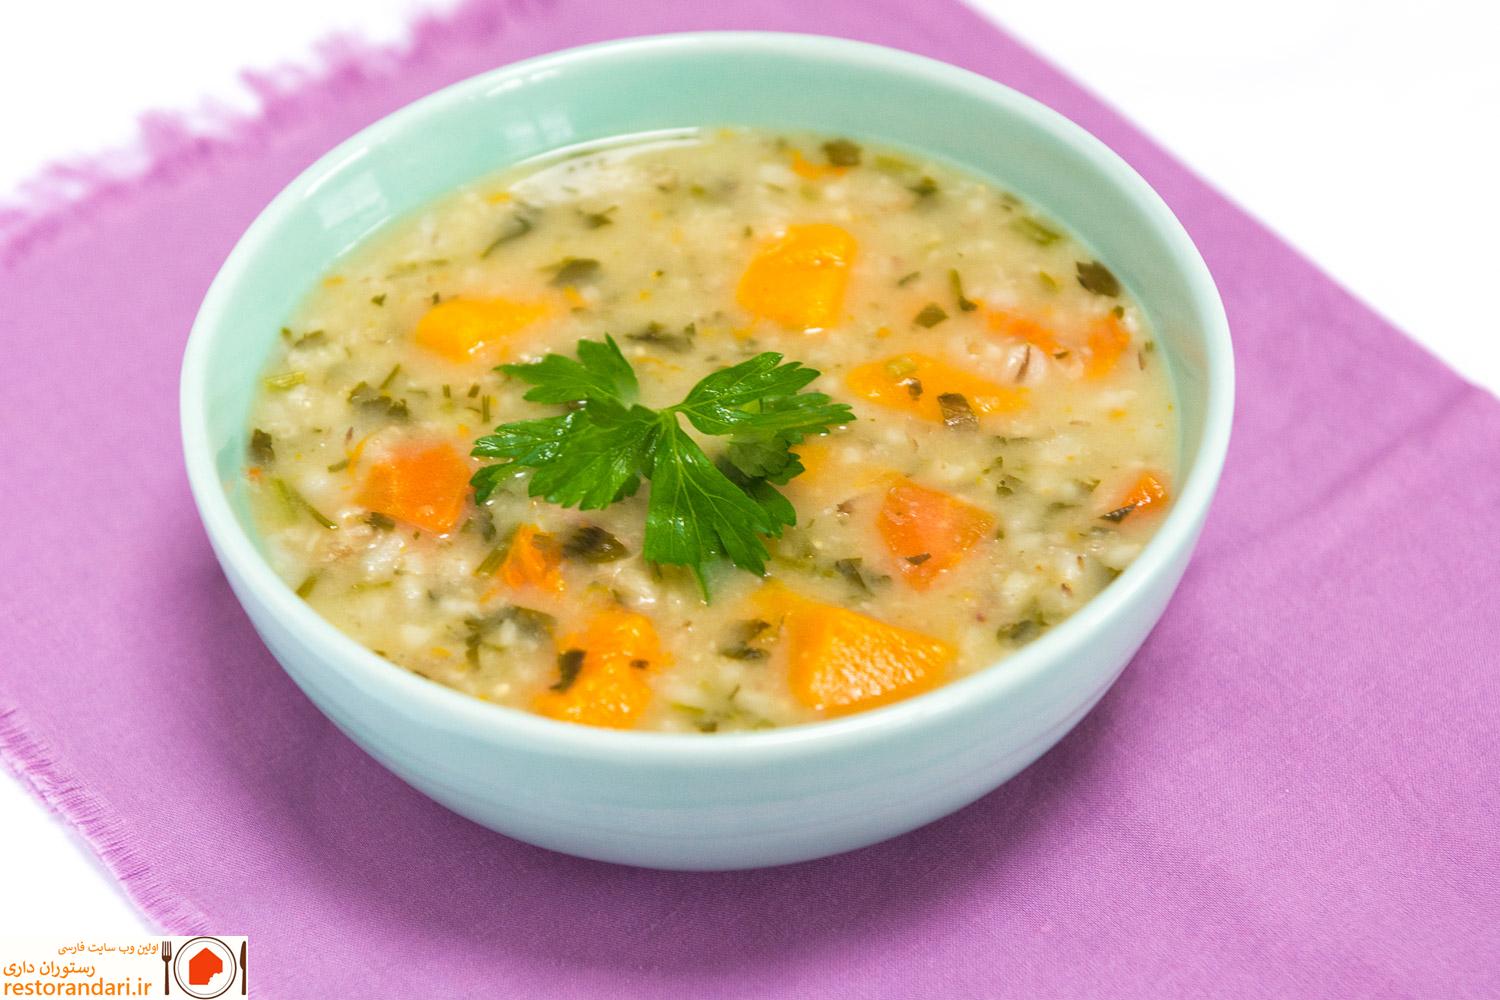 سوپ برای سرماخوردگی | سوپ مرغ و لوبیا